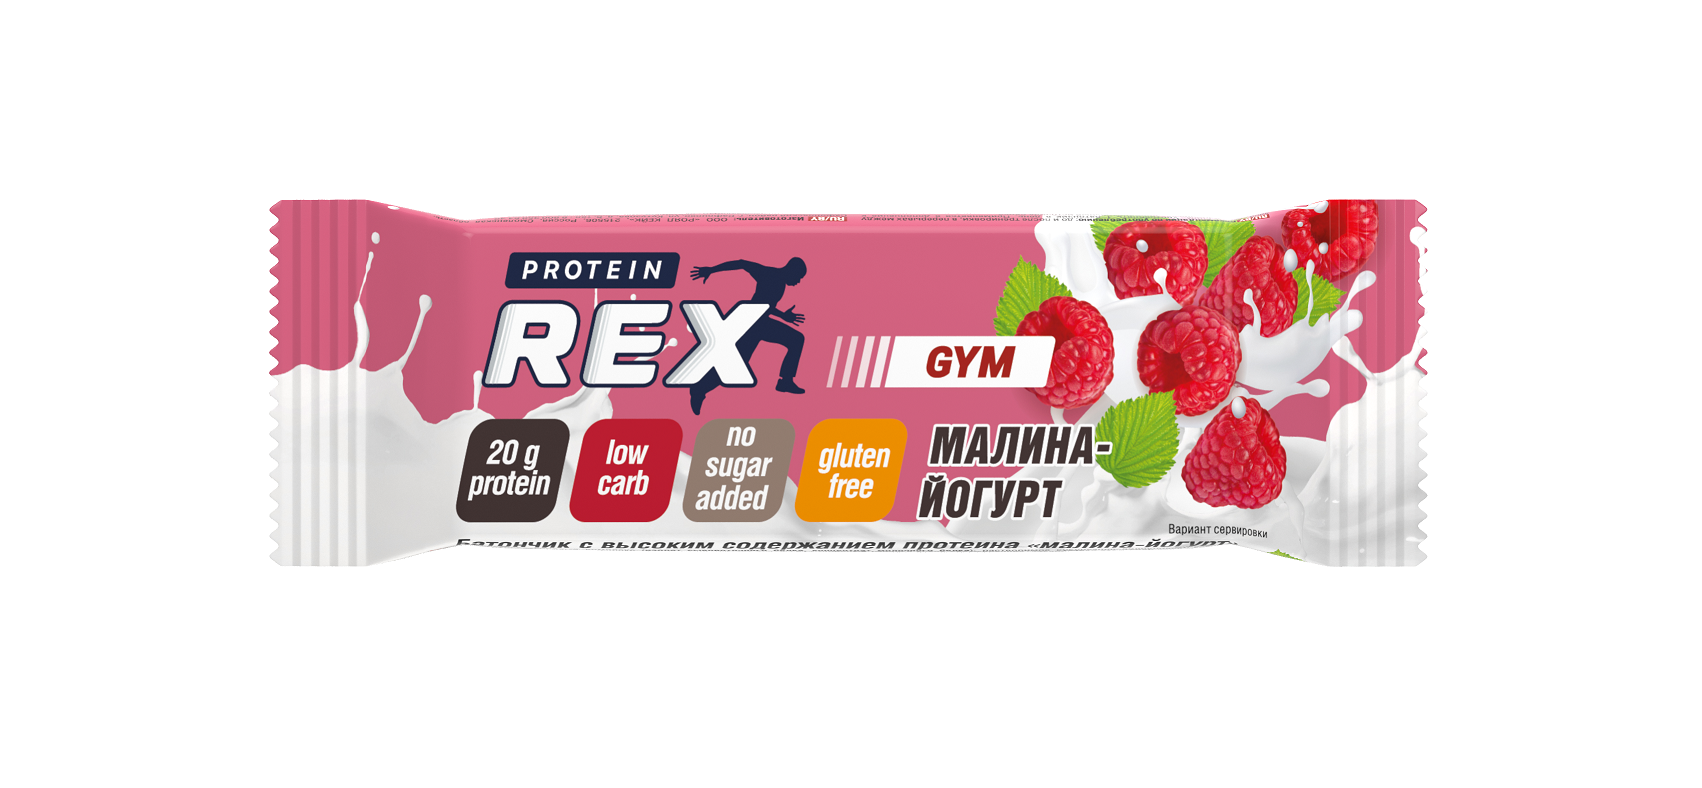 Батончик ProteinRex Gym протеиновый, без глазури, малина-йогурт, 60 г